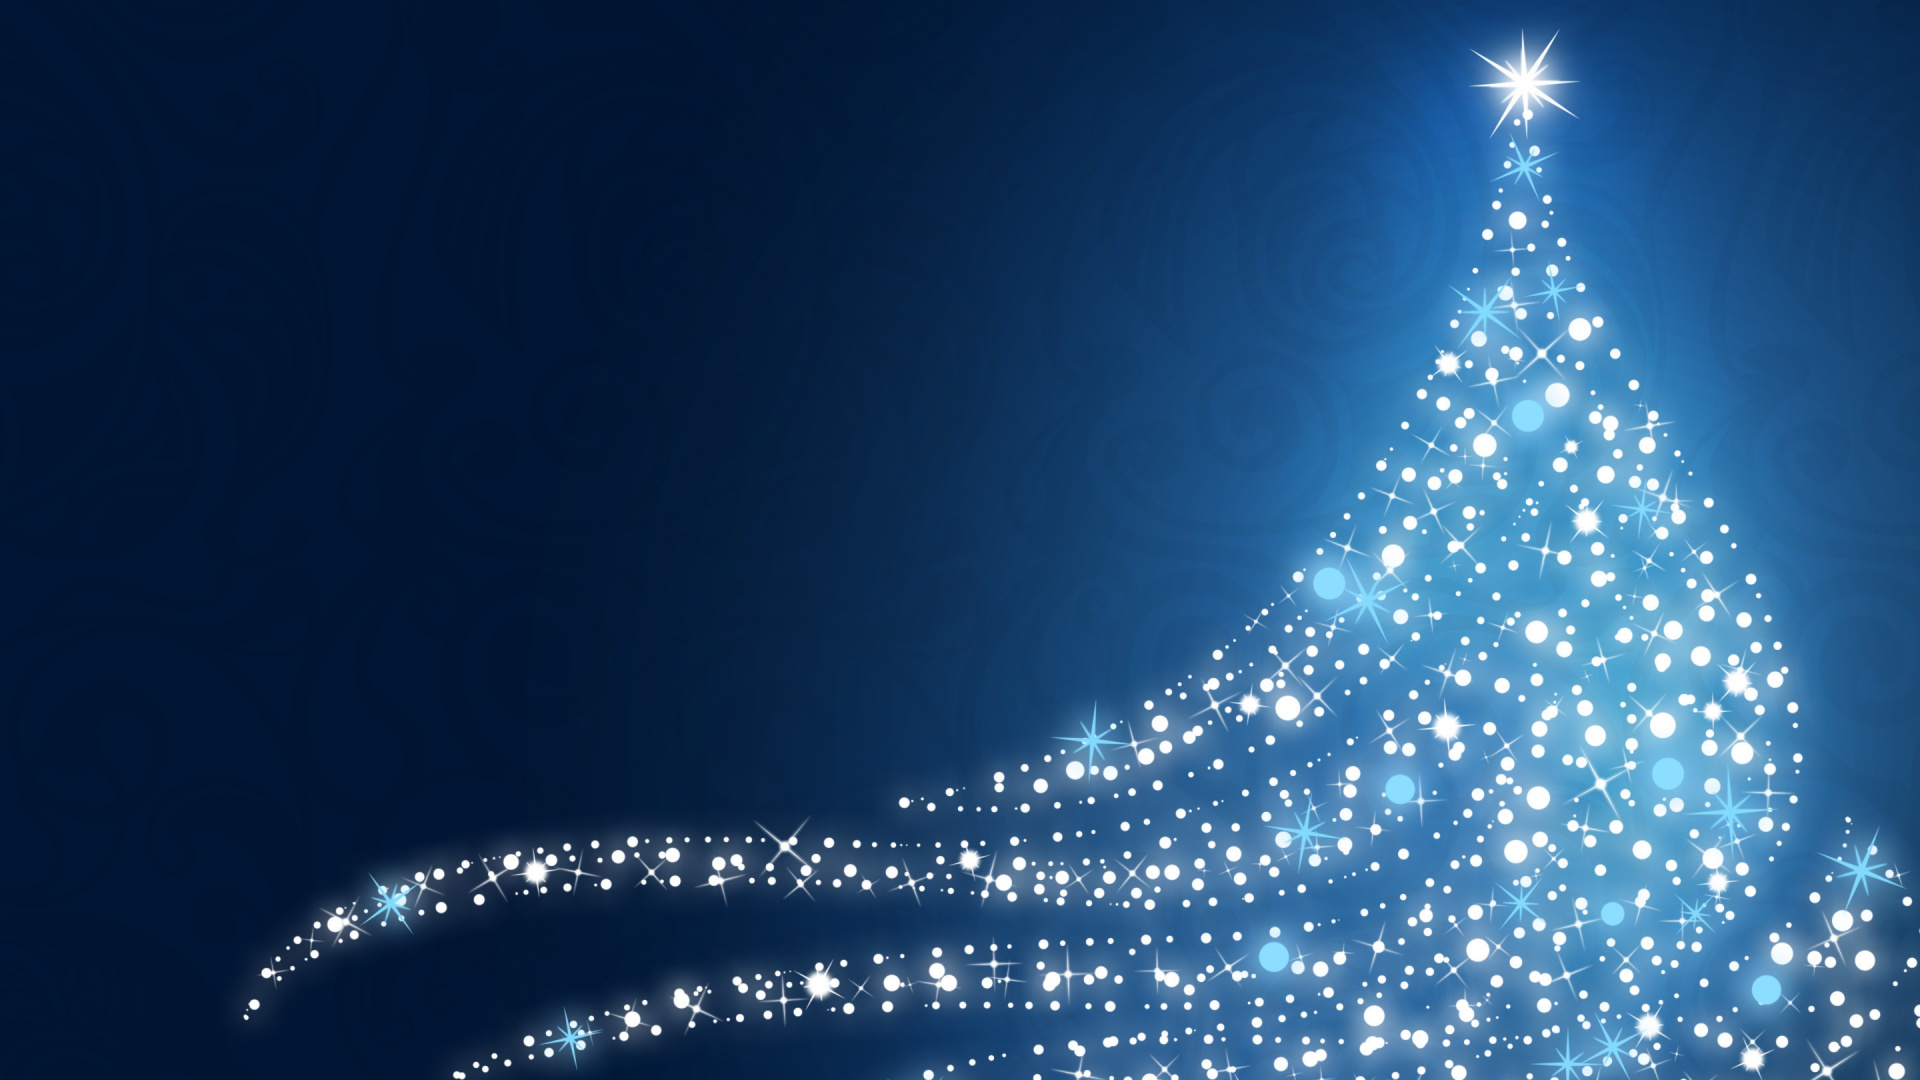 Weihnachten, Blau, Weihnachtsbaum, Weihnachtsdekoration, Baum. Wallpaper in 1920x1080 Resolution